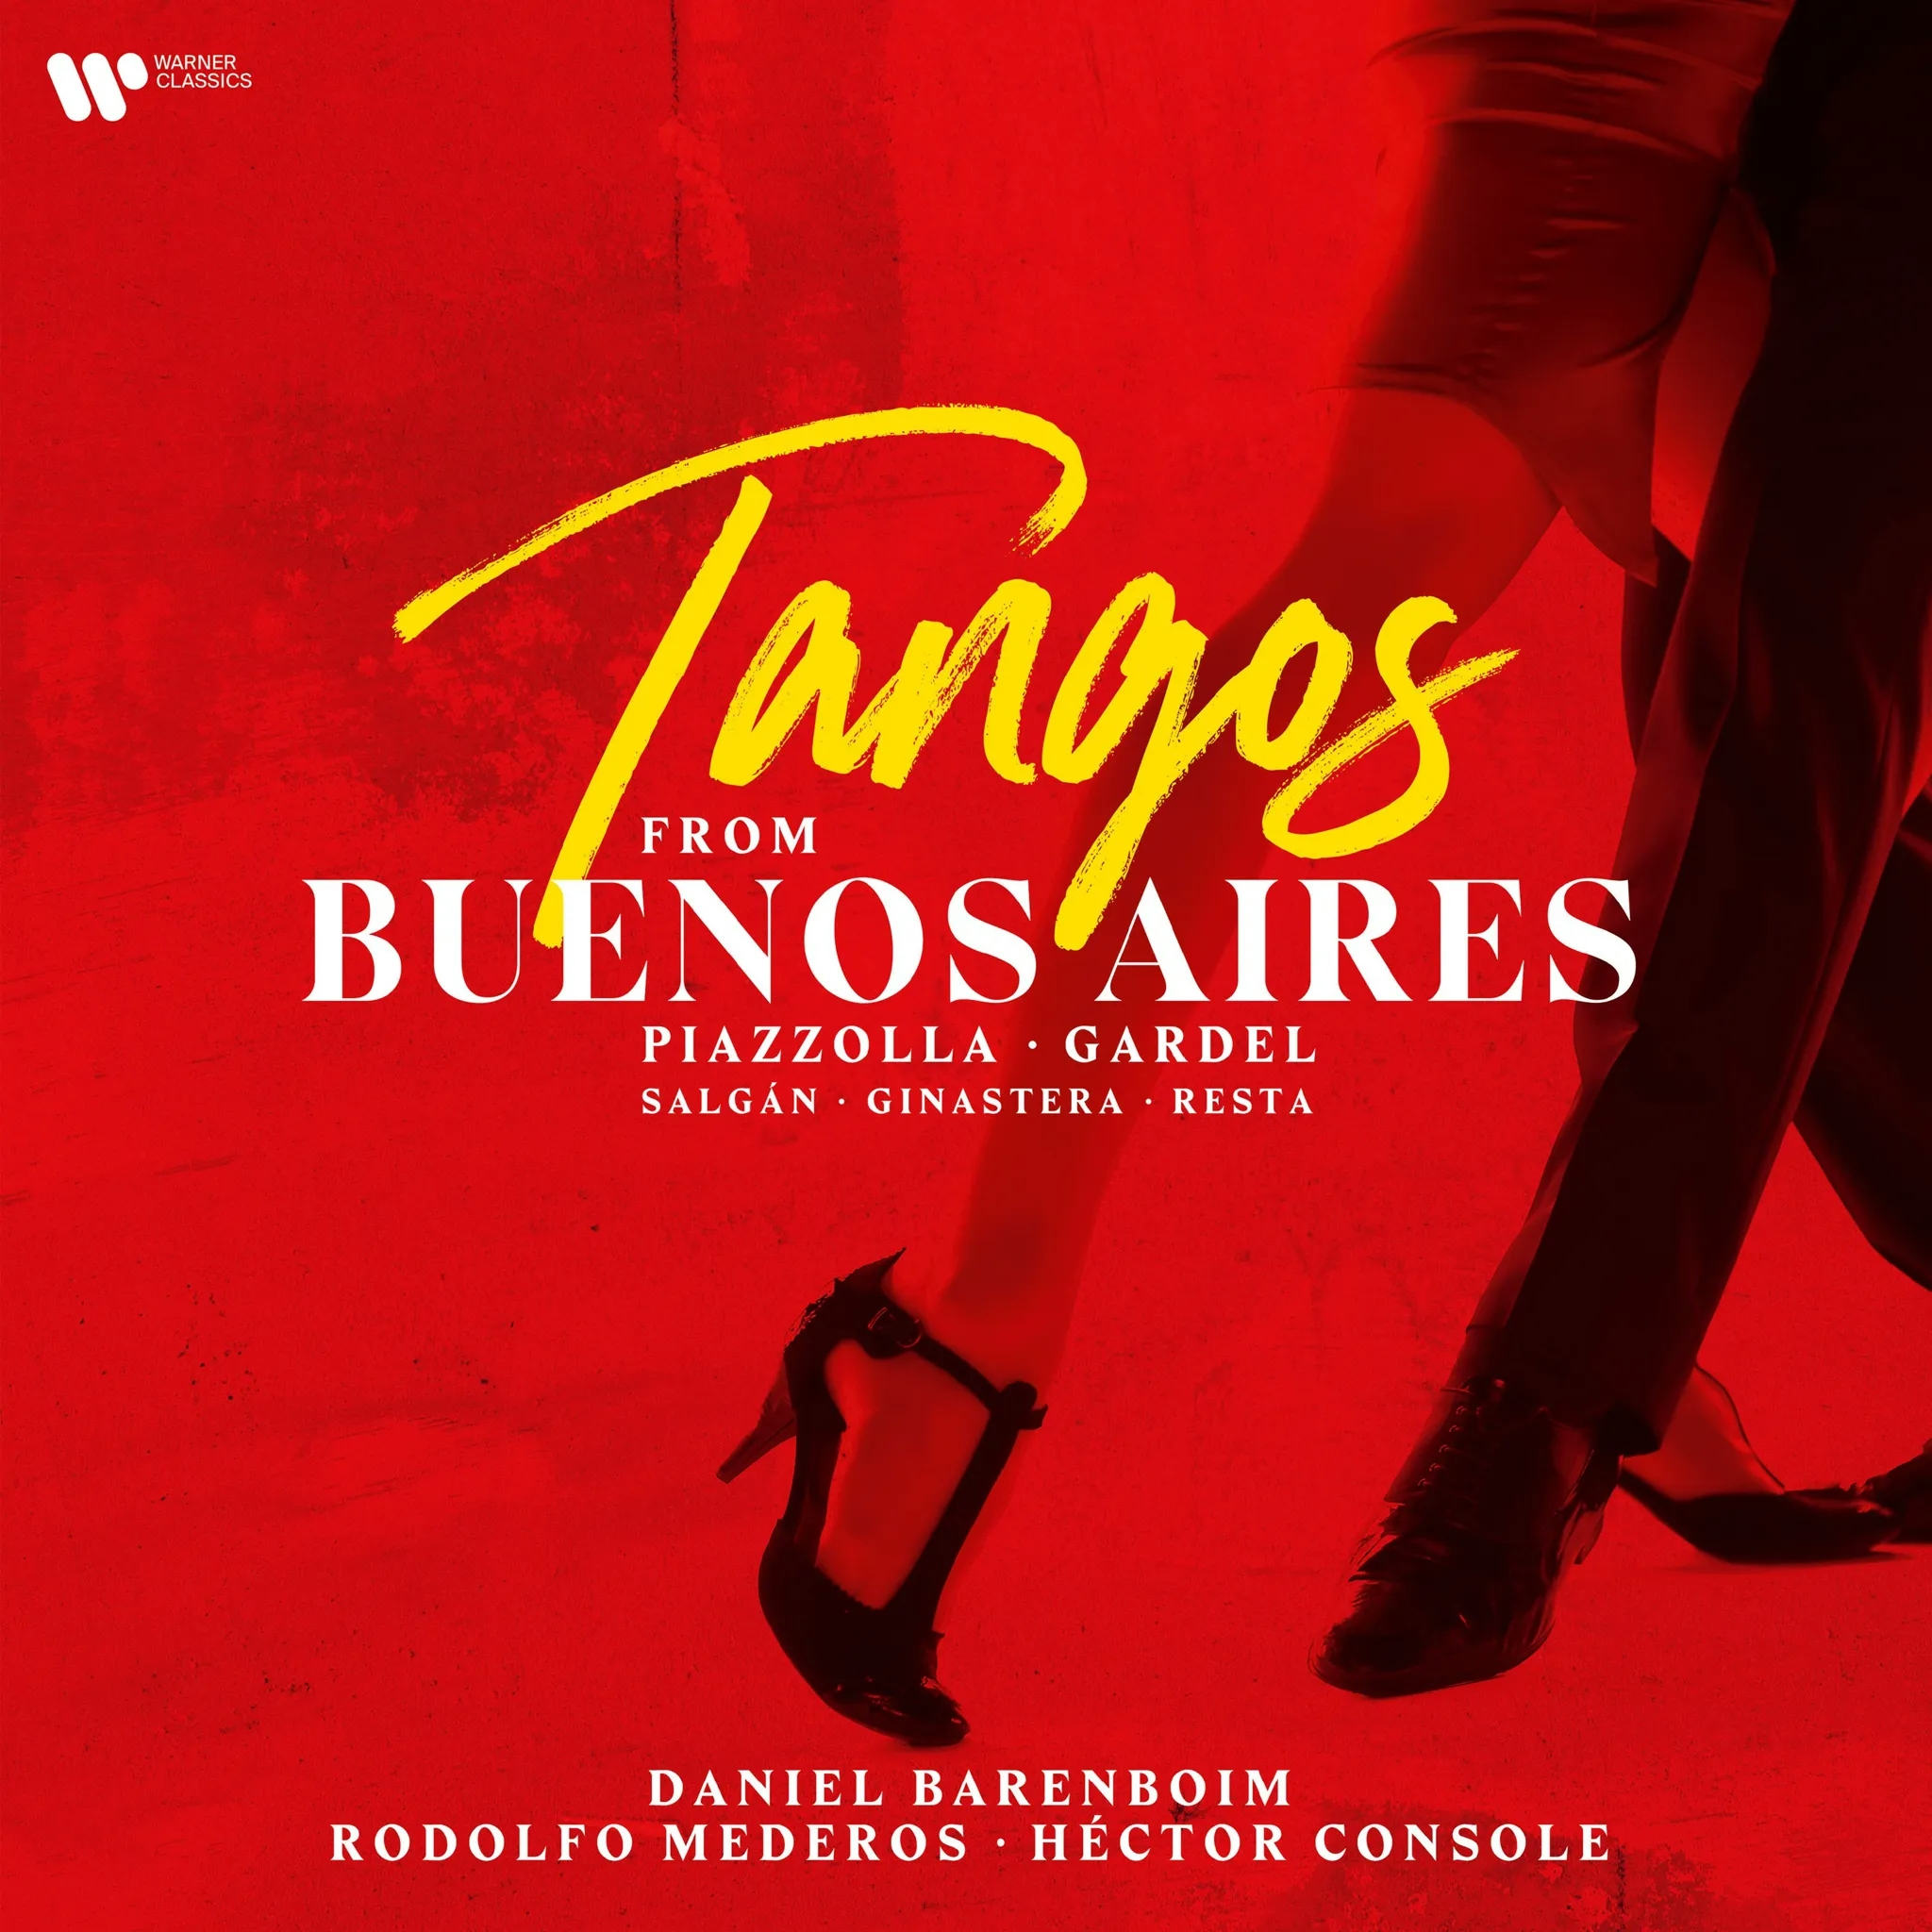 Album artwork for Album artwork for Tangos From Buenos Aires by Daniel Barenboim by Tangos From Buenos Aires - Daniel Barenboim